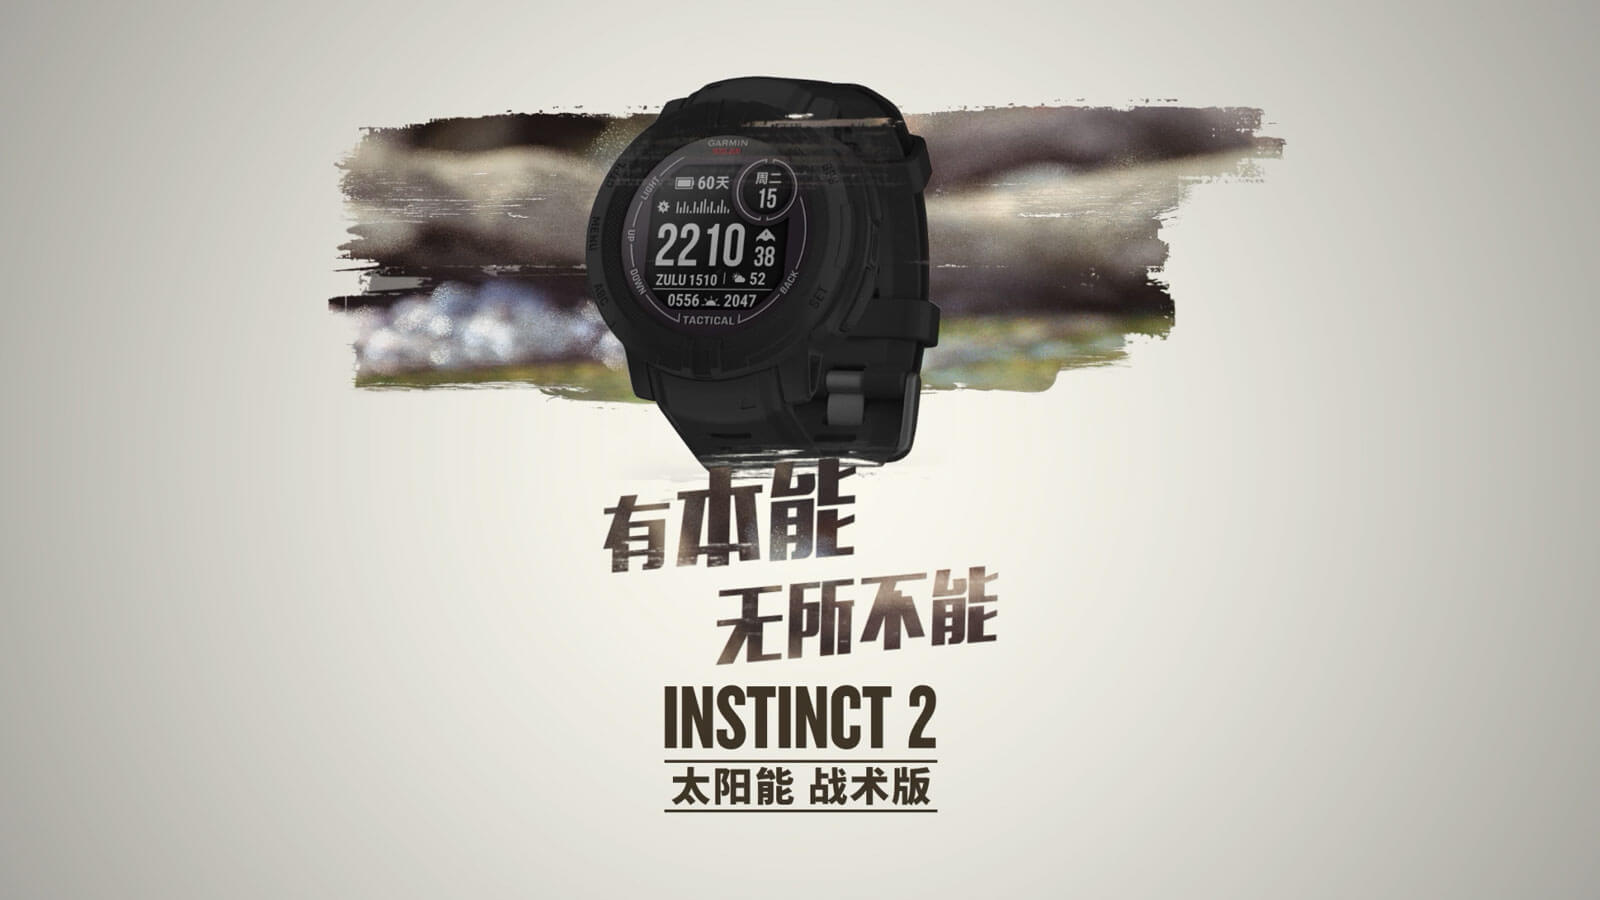 Instinct 2 战术版 - 坚固耐用的太阳能充电GPS智能手表